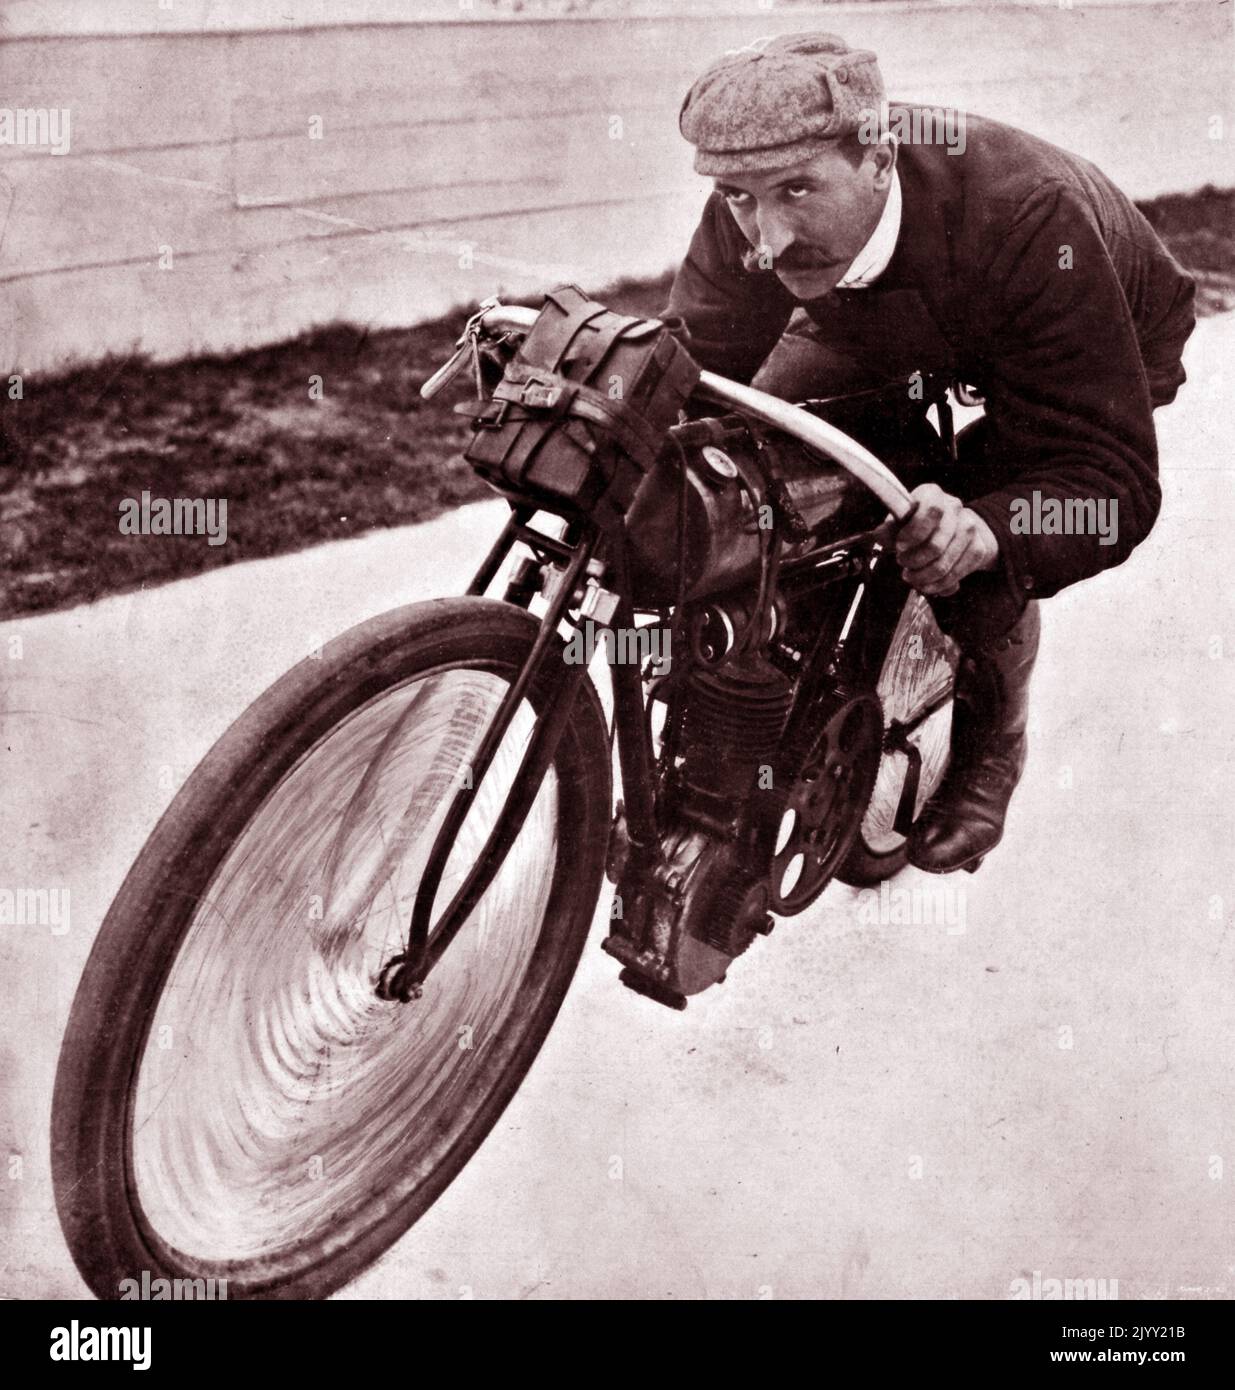 Henri Cissac und seine Peugeot-Motorcyclette (1905). Henri Cissac, (1877 - 1908); französischer Motorrad-Speed-Fahrer, der nach seiner gesamten Karriere beim französischen Automobilhersteller Peugeot zum Rennfahrer wurde. Im Mai 1905 gewann er eine französische Meisterschaft, insbesondere die Spezialkategorie Tour de France Stockfoto